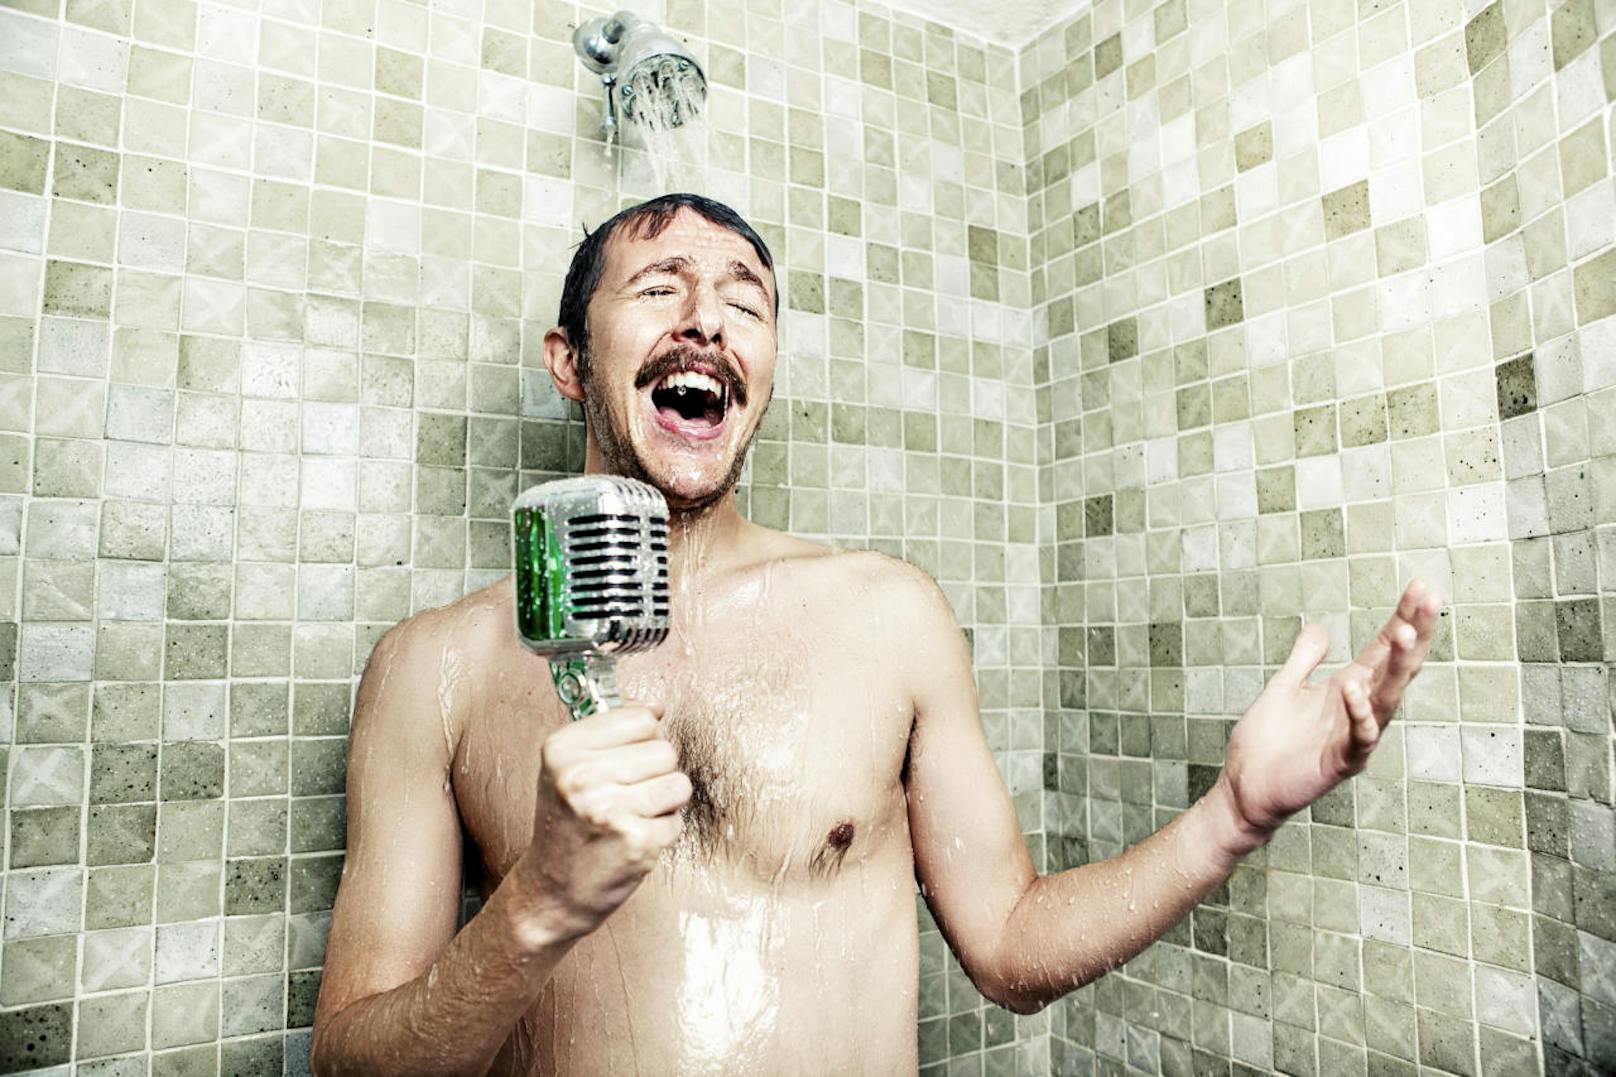 Ein User stellte der Reddit-Community die Frage:  "Was ist ein Mythos über Männer, der zu 100 Prozent unwahr ist und euch immer wieder auf die Palme bringt, wenn ihr ihn hört?" Bald darauf erhielt er unzählige Antworten. 


"Wenn wir lange im Badezimmer sind, heißt das nicht immer, dass wir uns einen runterholen - manchmal genießen wir es einfach, ausgiebig zu duschen," schrieb einer.